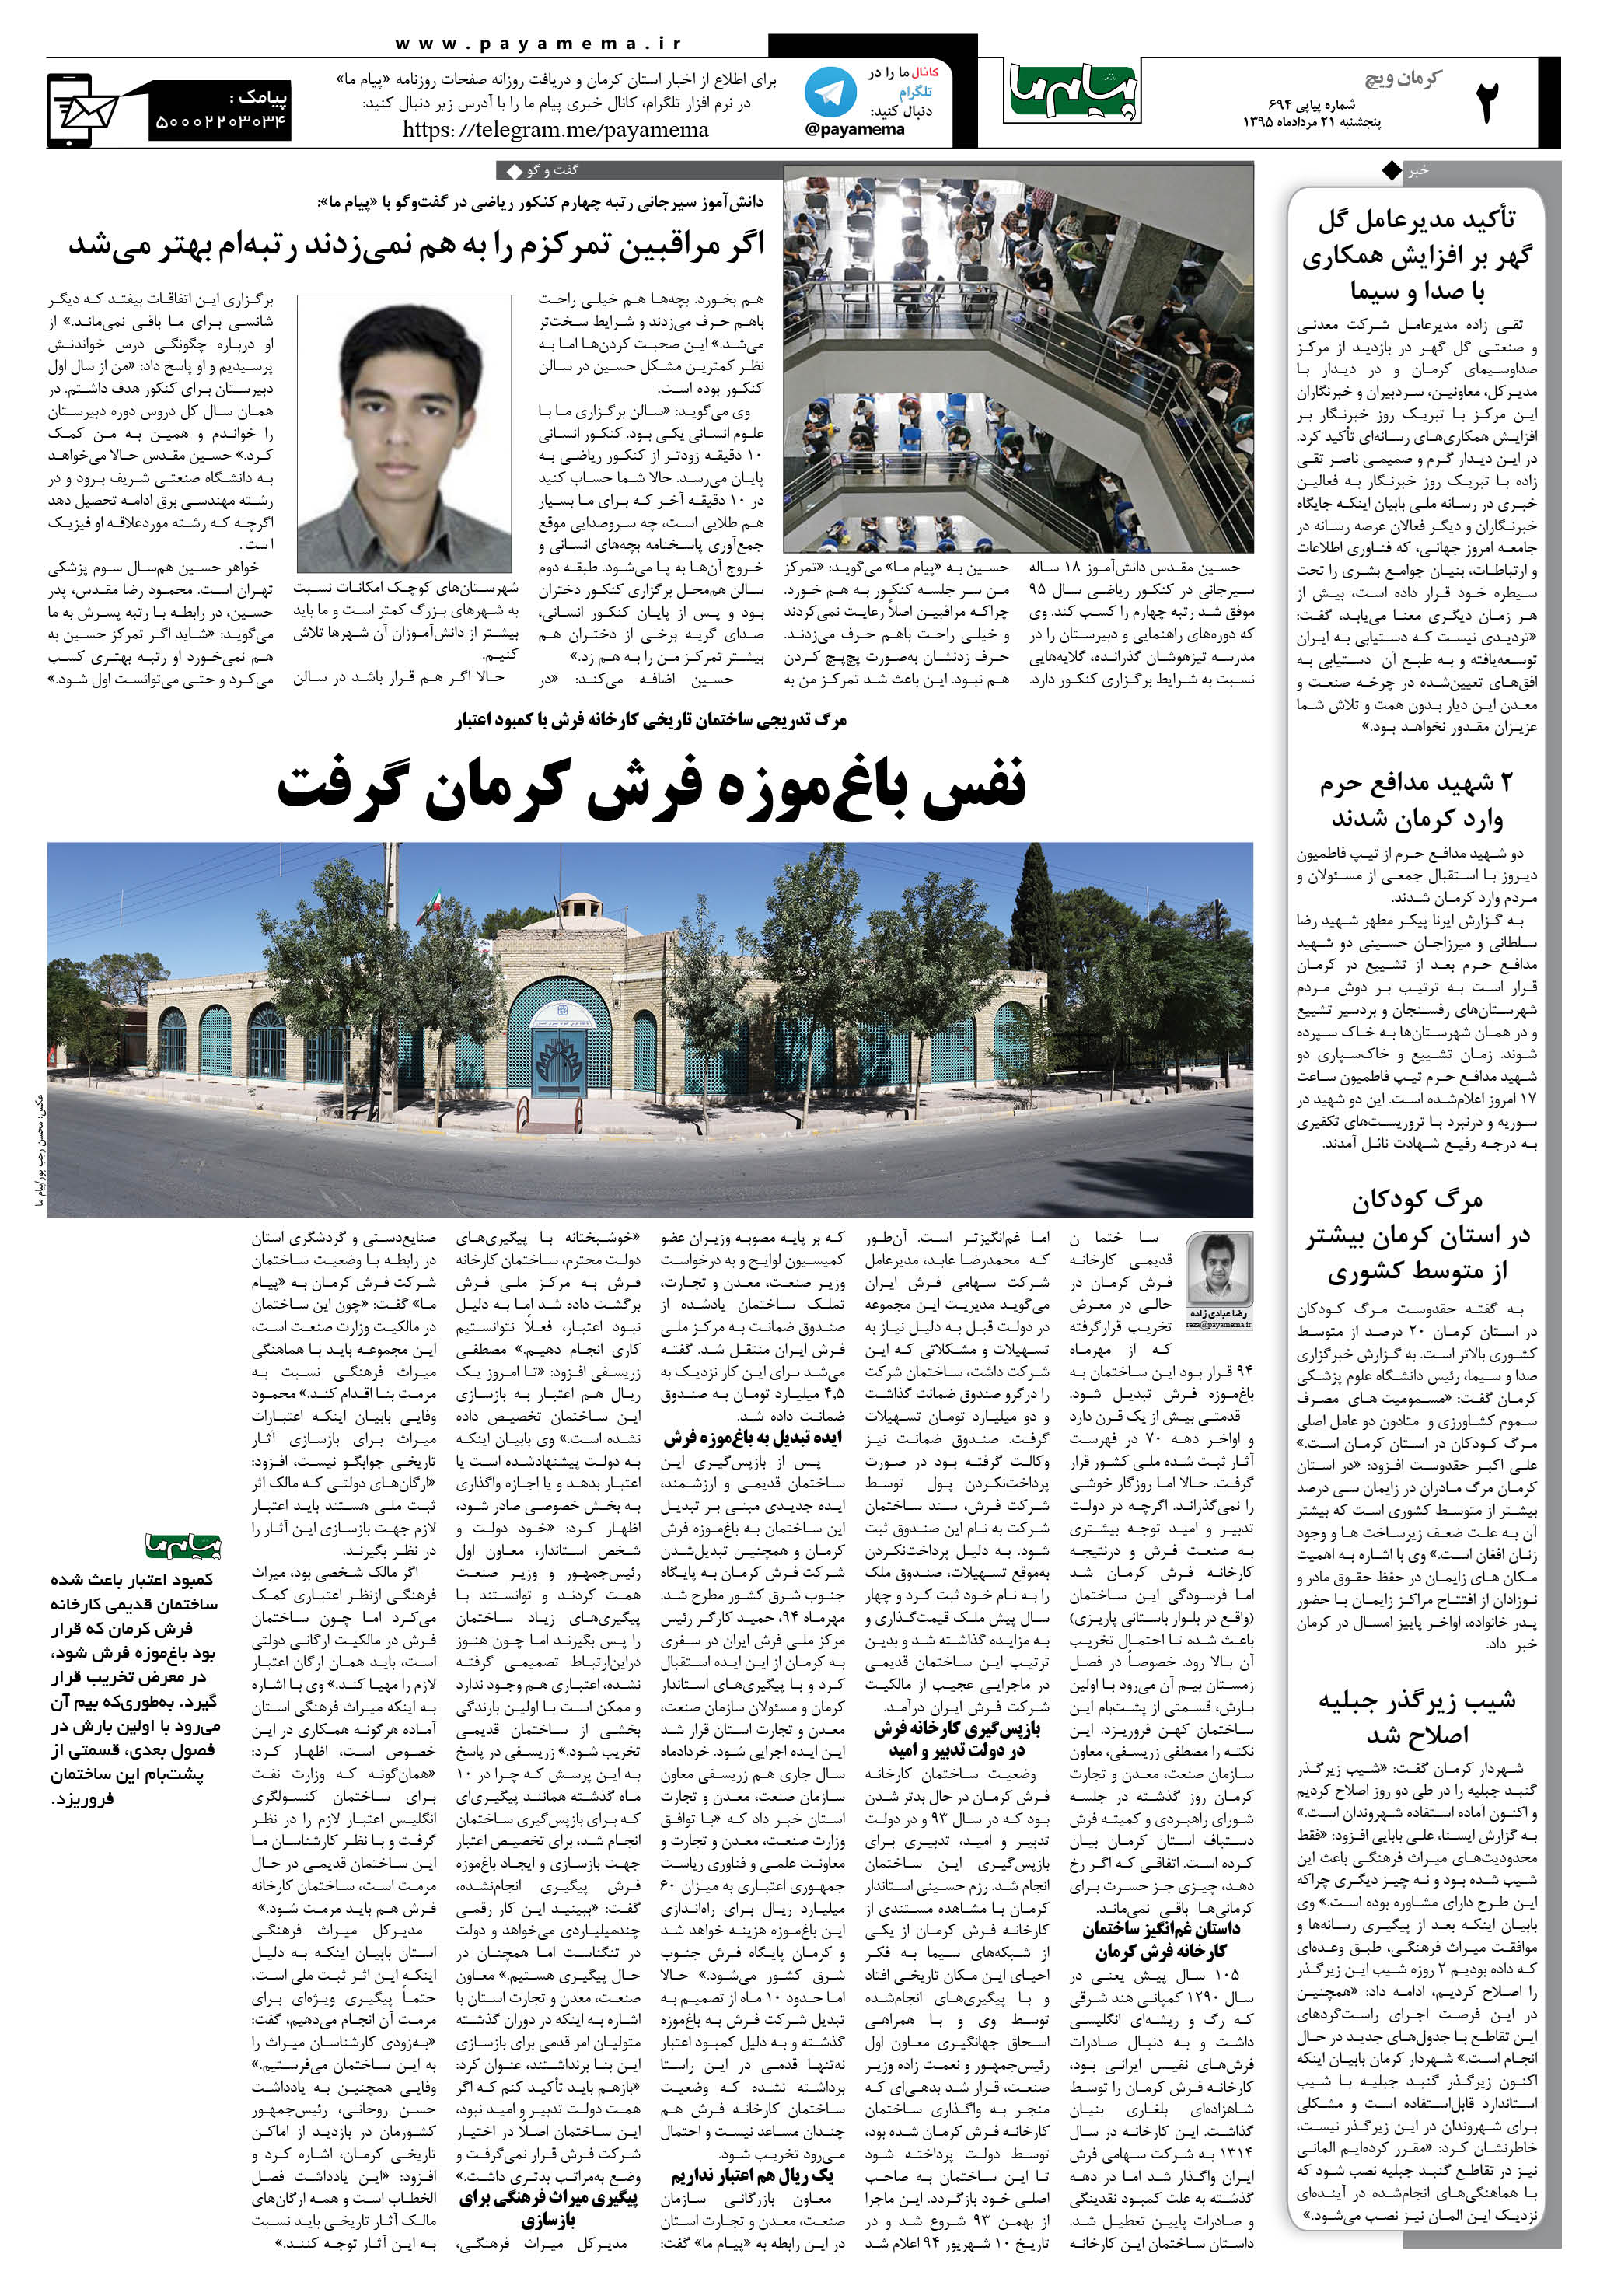 صفحه کرمان ویج شماره 694 روزنامه پیام ما